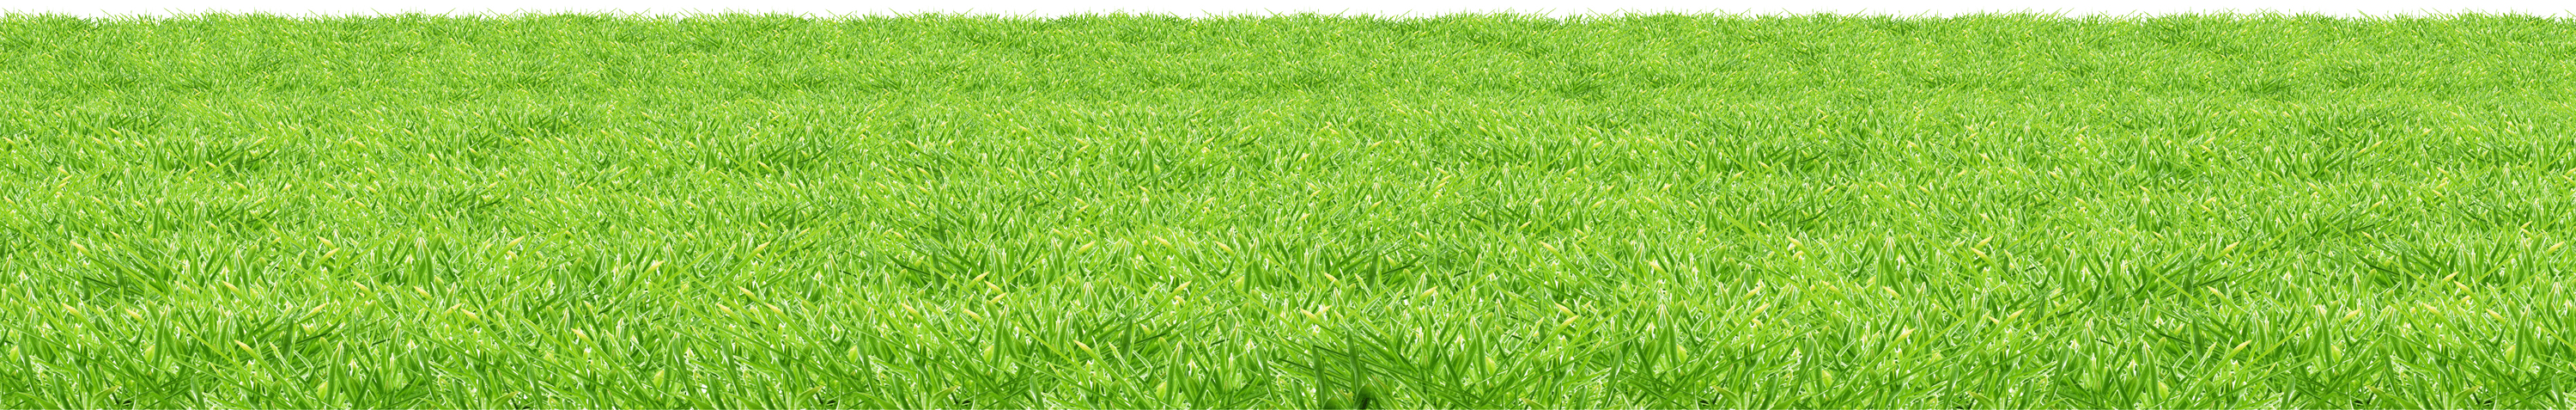 Estera de piso de hierba artificial